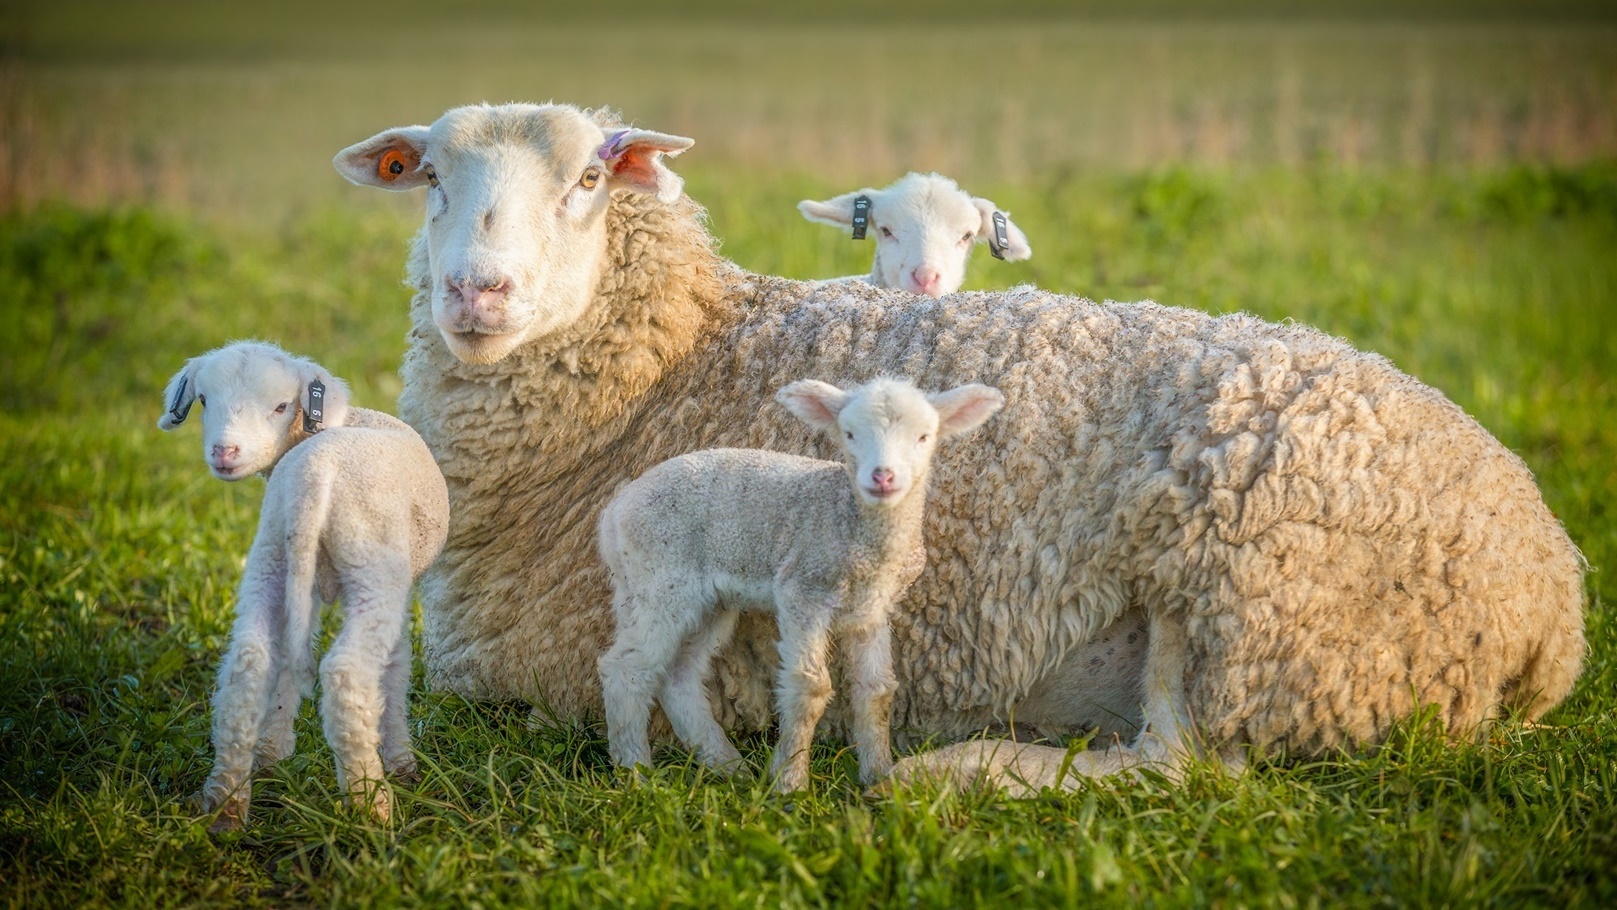 sheep-and-3-lambs-2021-08-26-16-38-31-utc